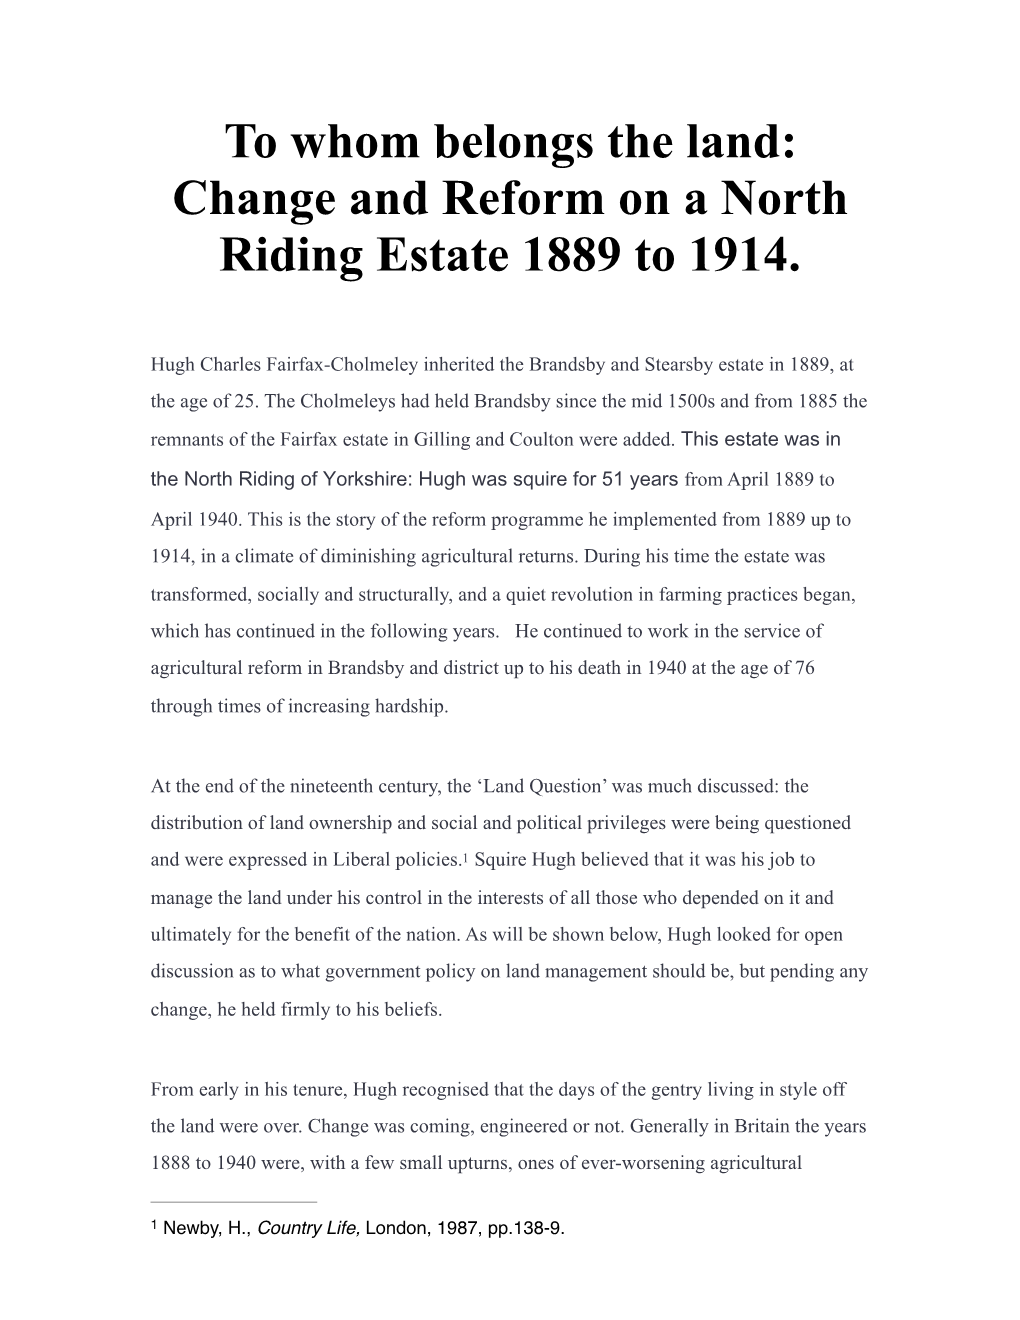 Change & Reform Brandsby